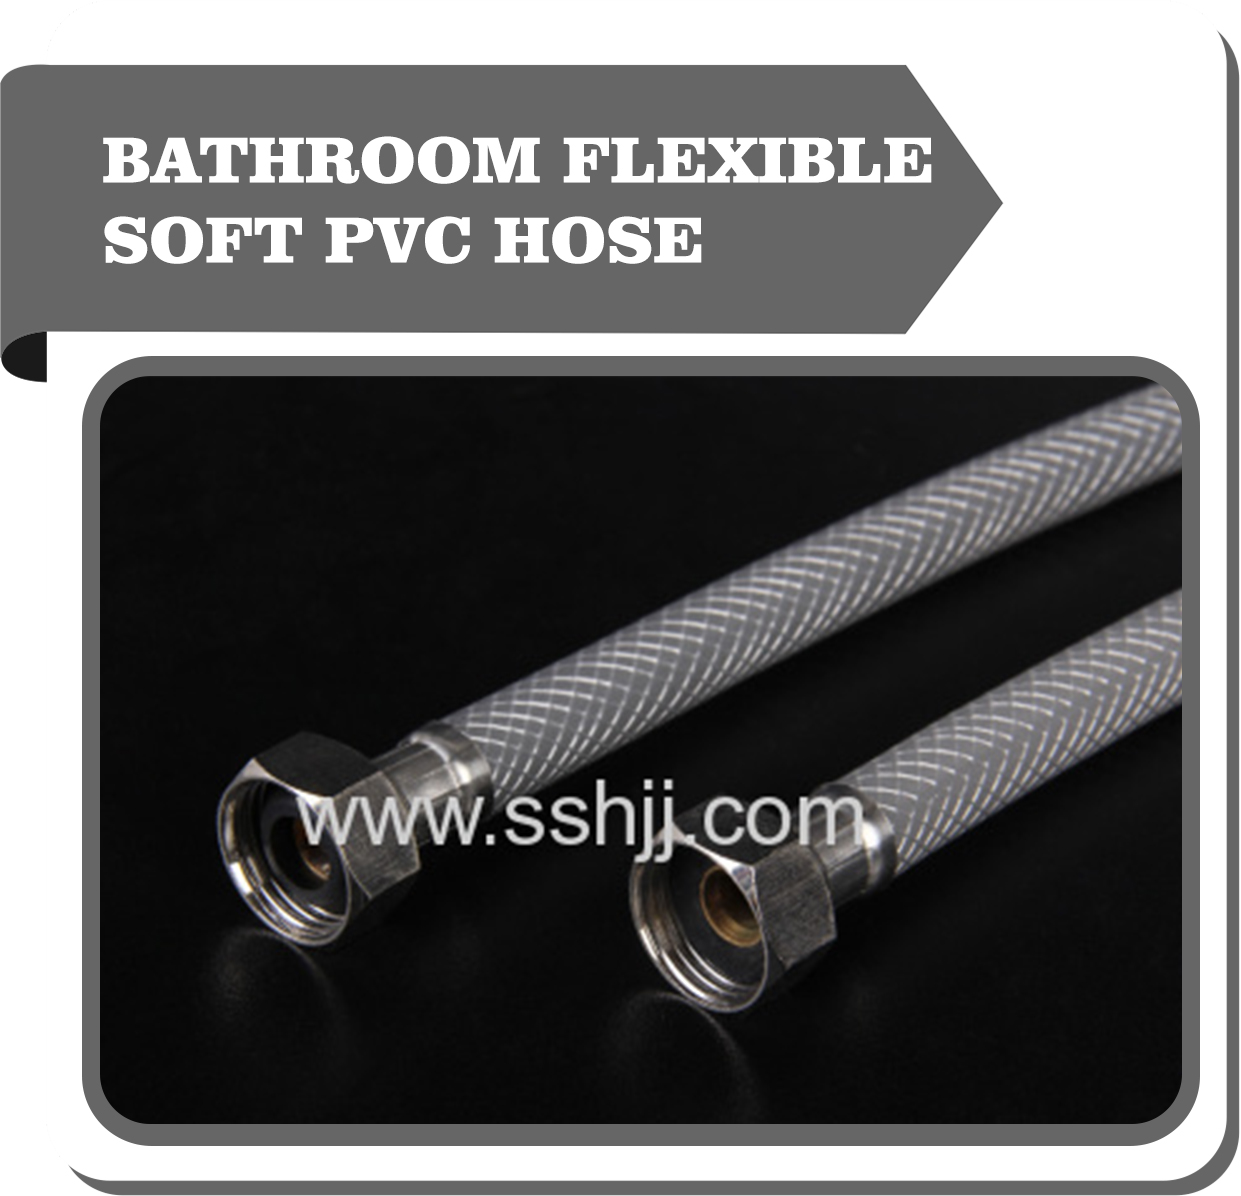 Bathroom flexible pvc hose